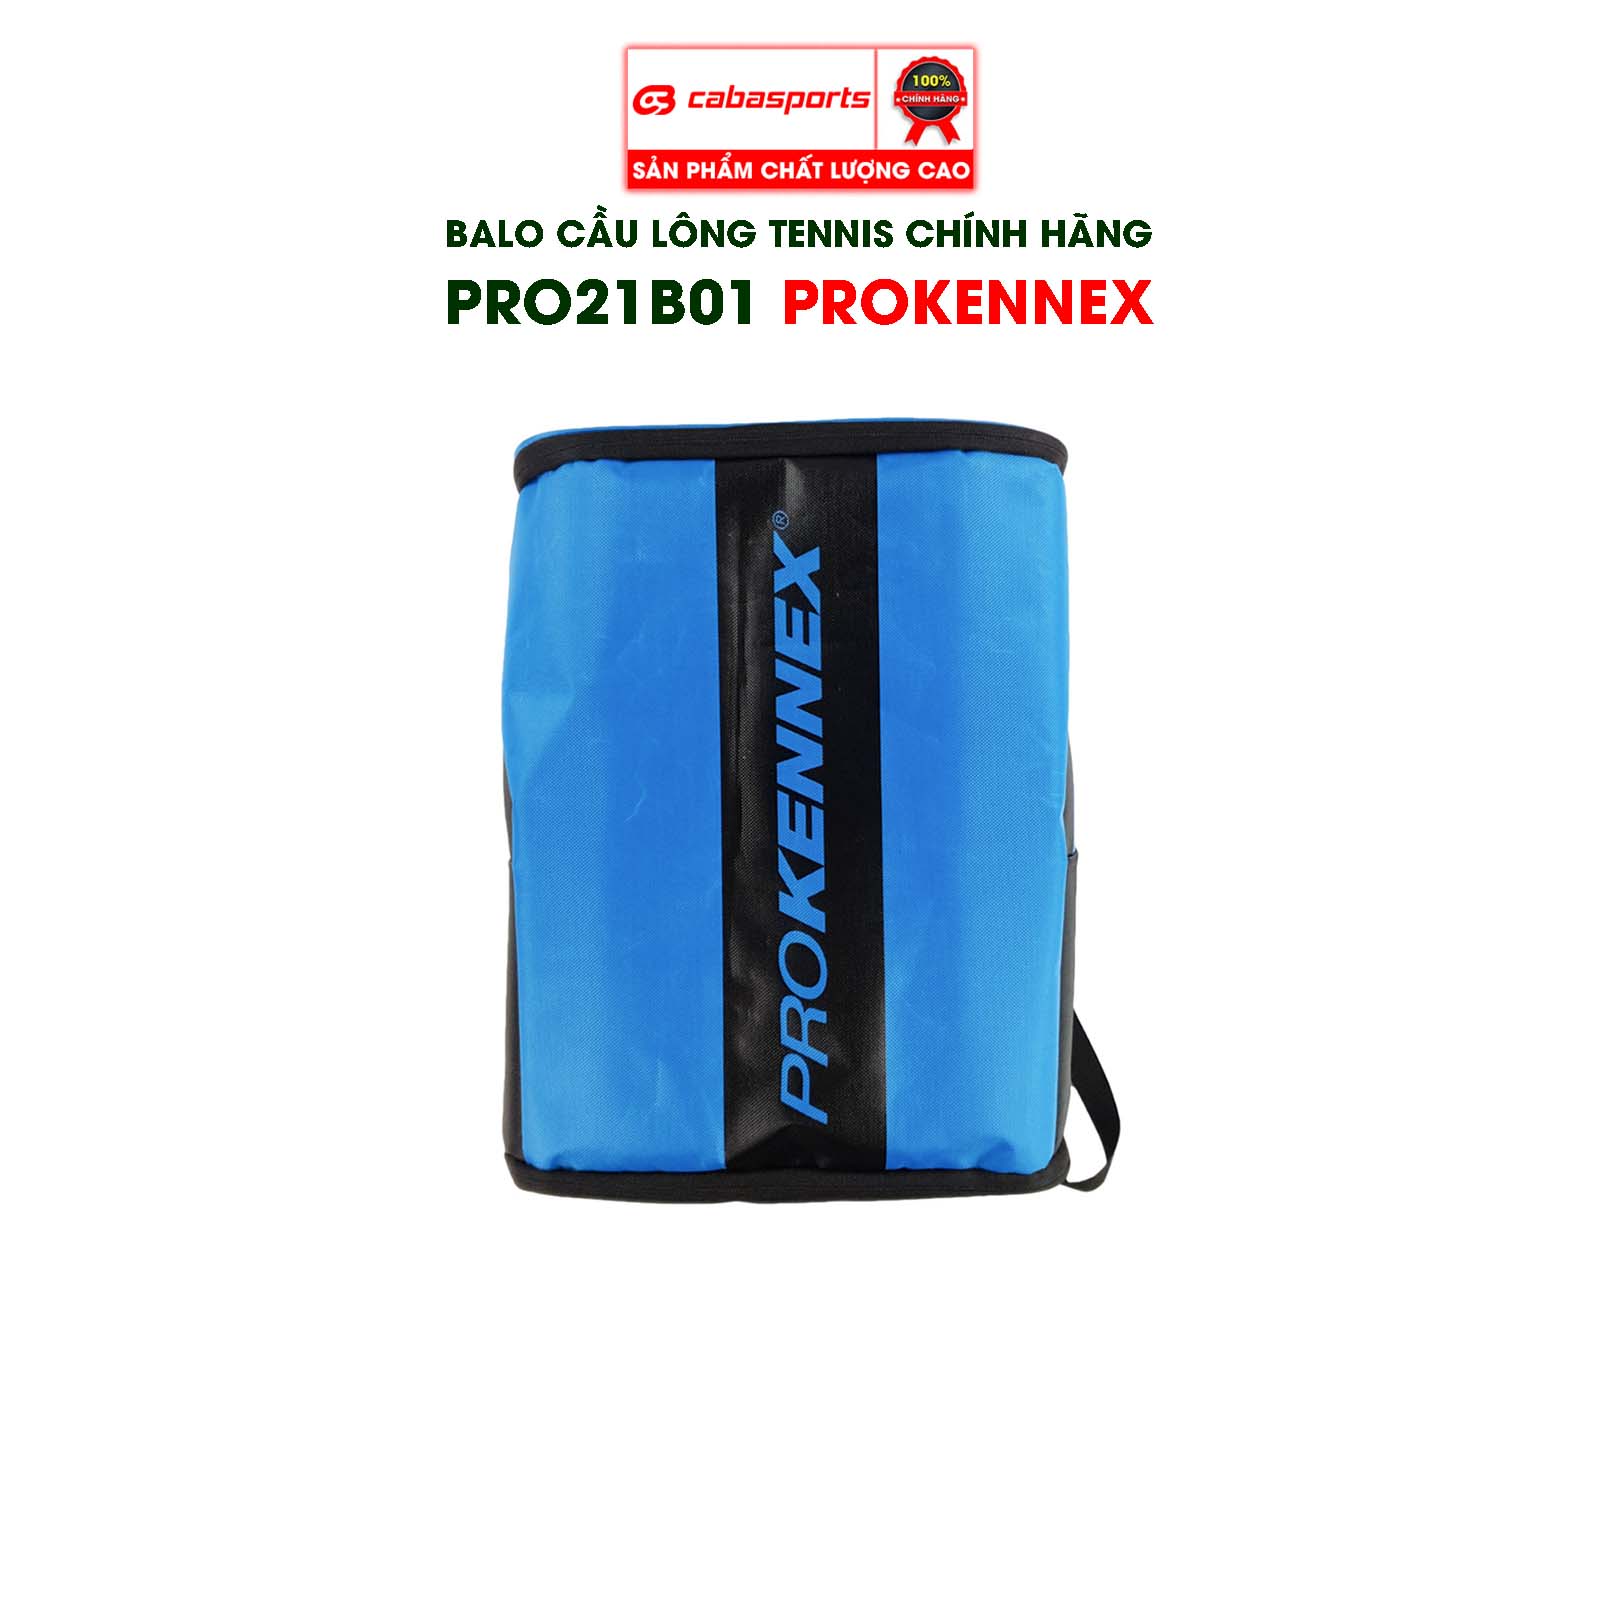 Balo cầu lông chính hãng ProKennex PRO21B01